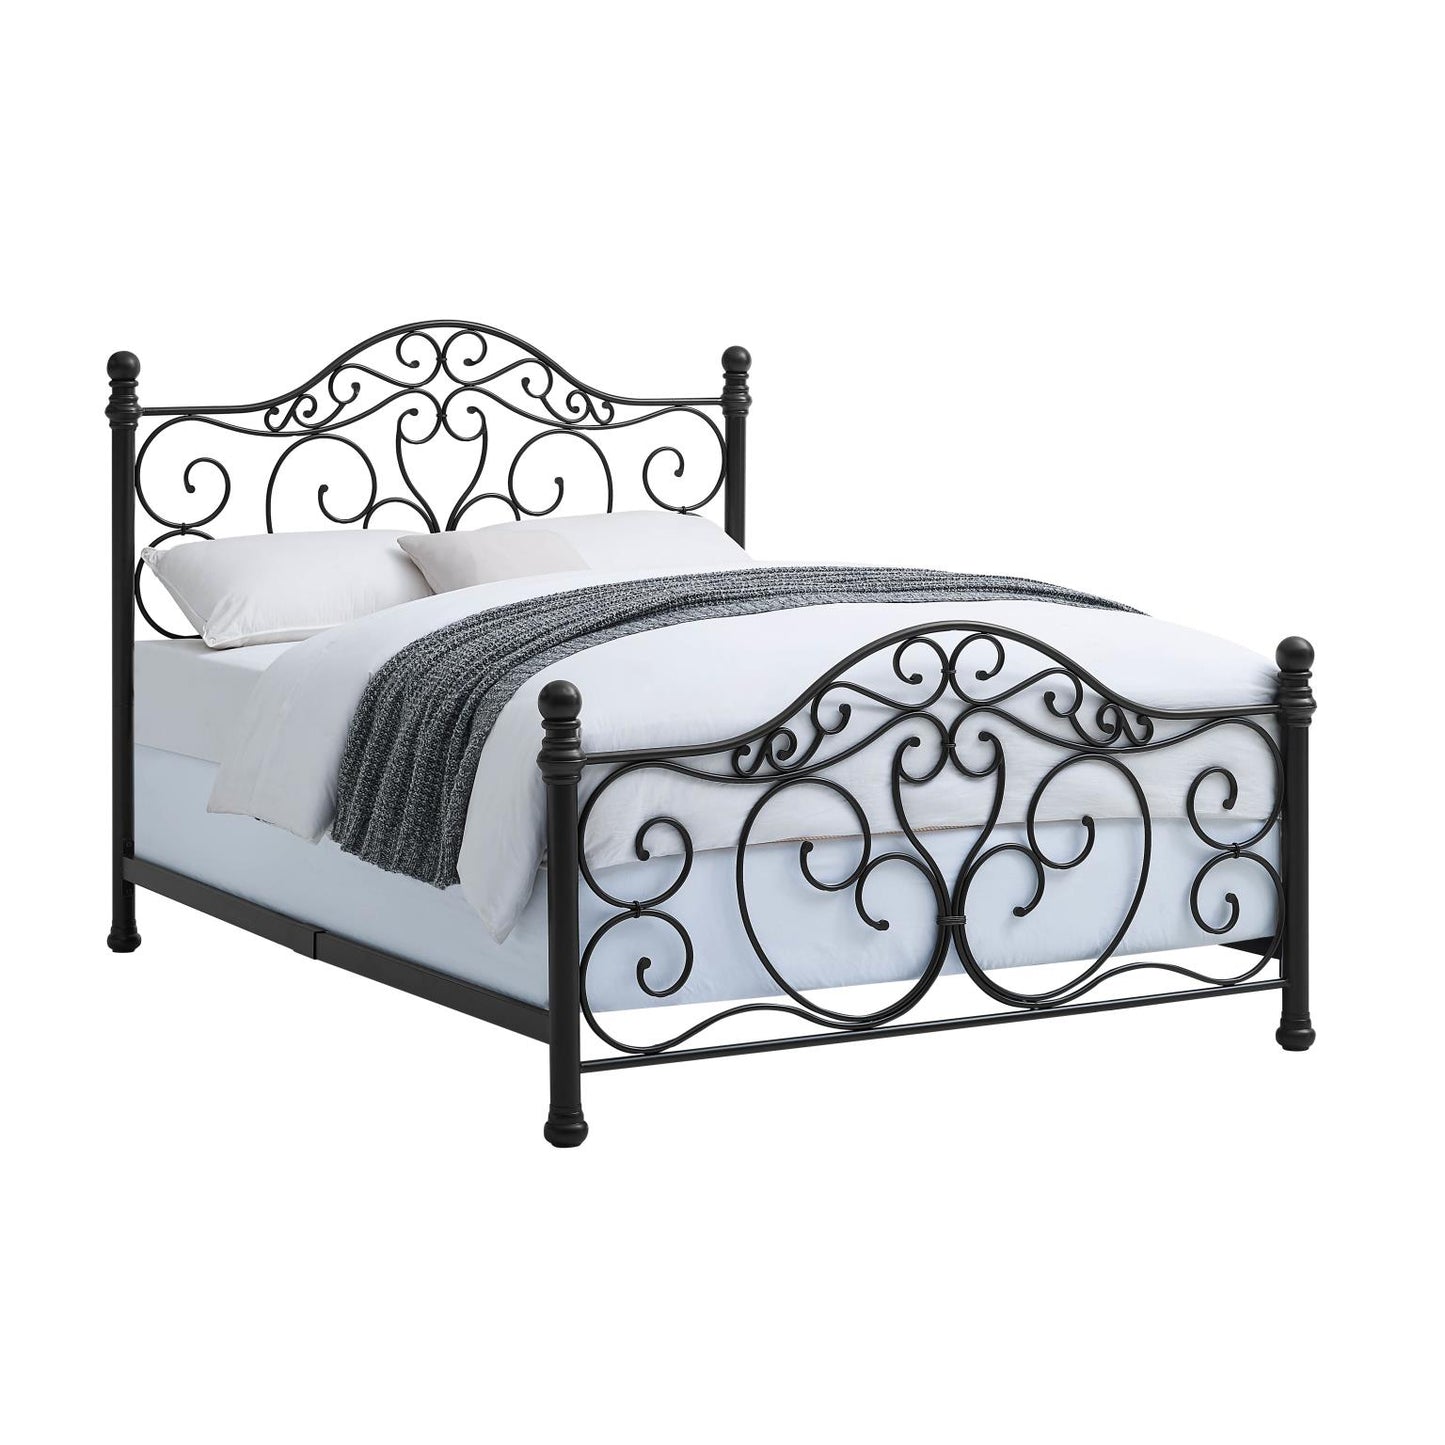 WEEKLY or MONTHLY. Elsie Queen Scroll Metal Bed